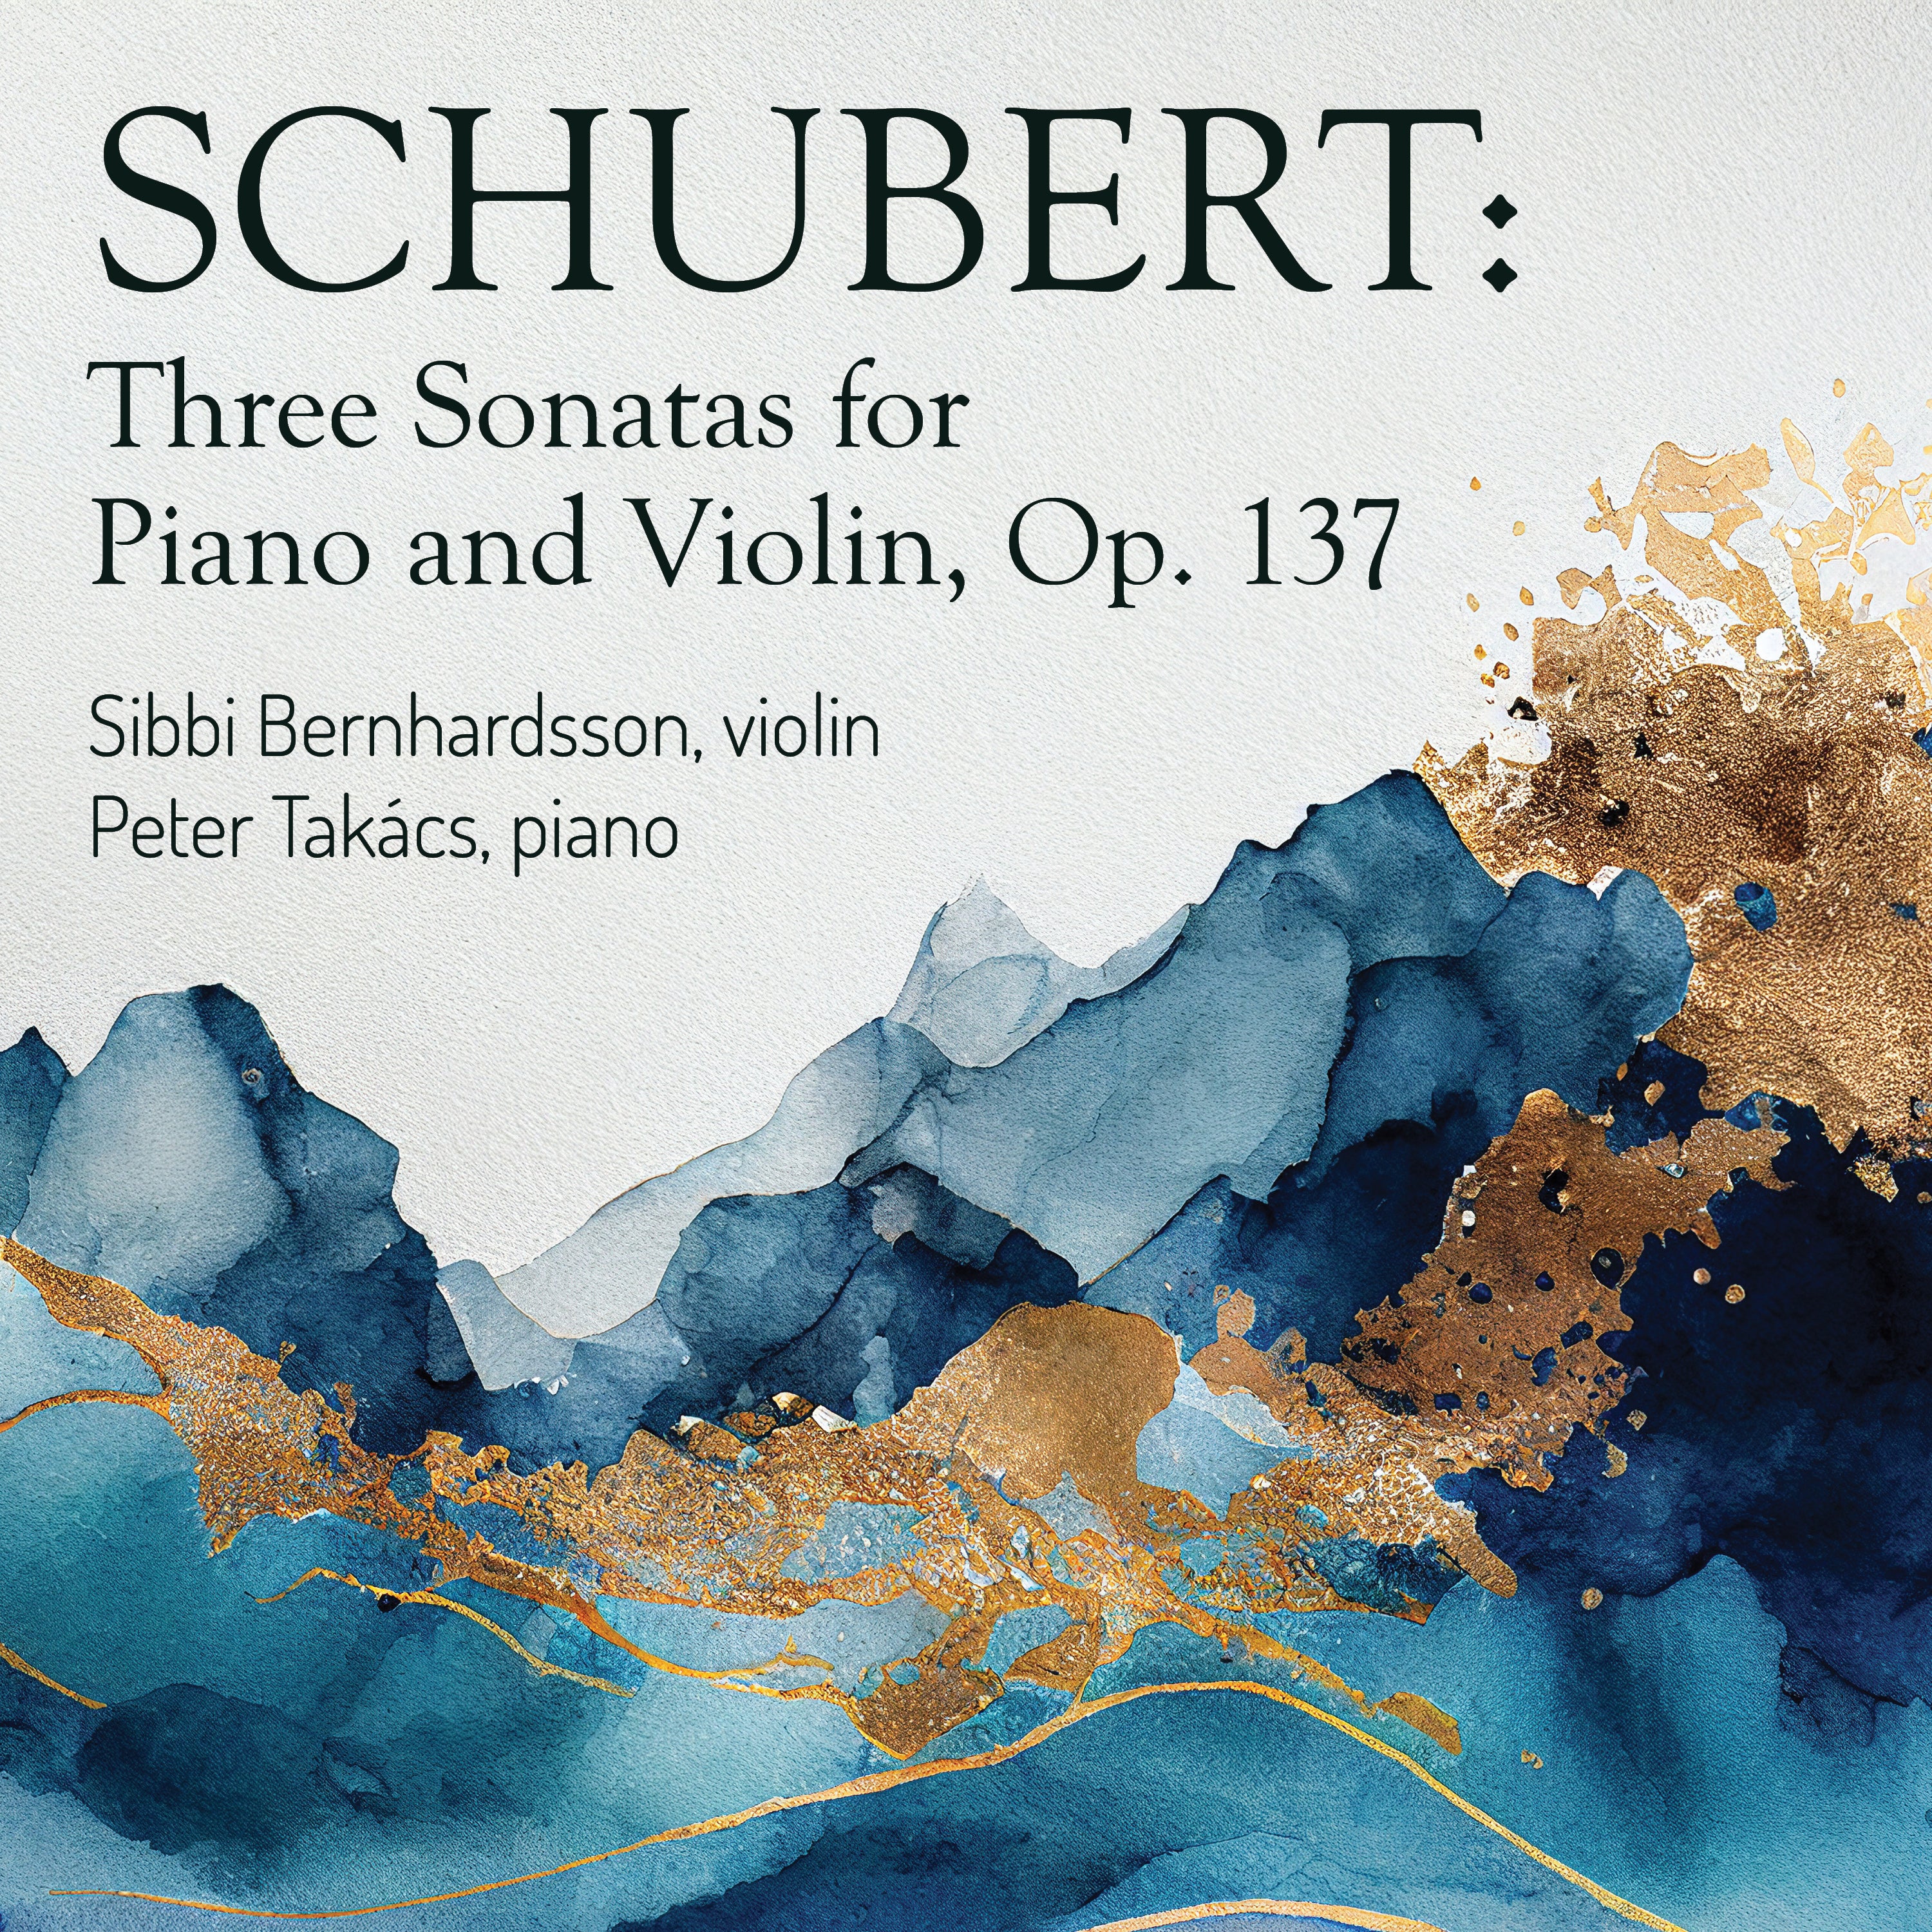 Schubert Violin Sonatas album cover art